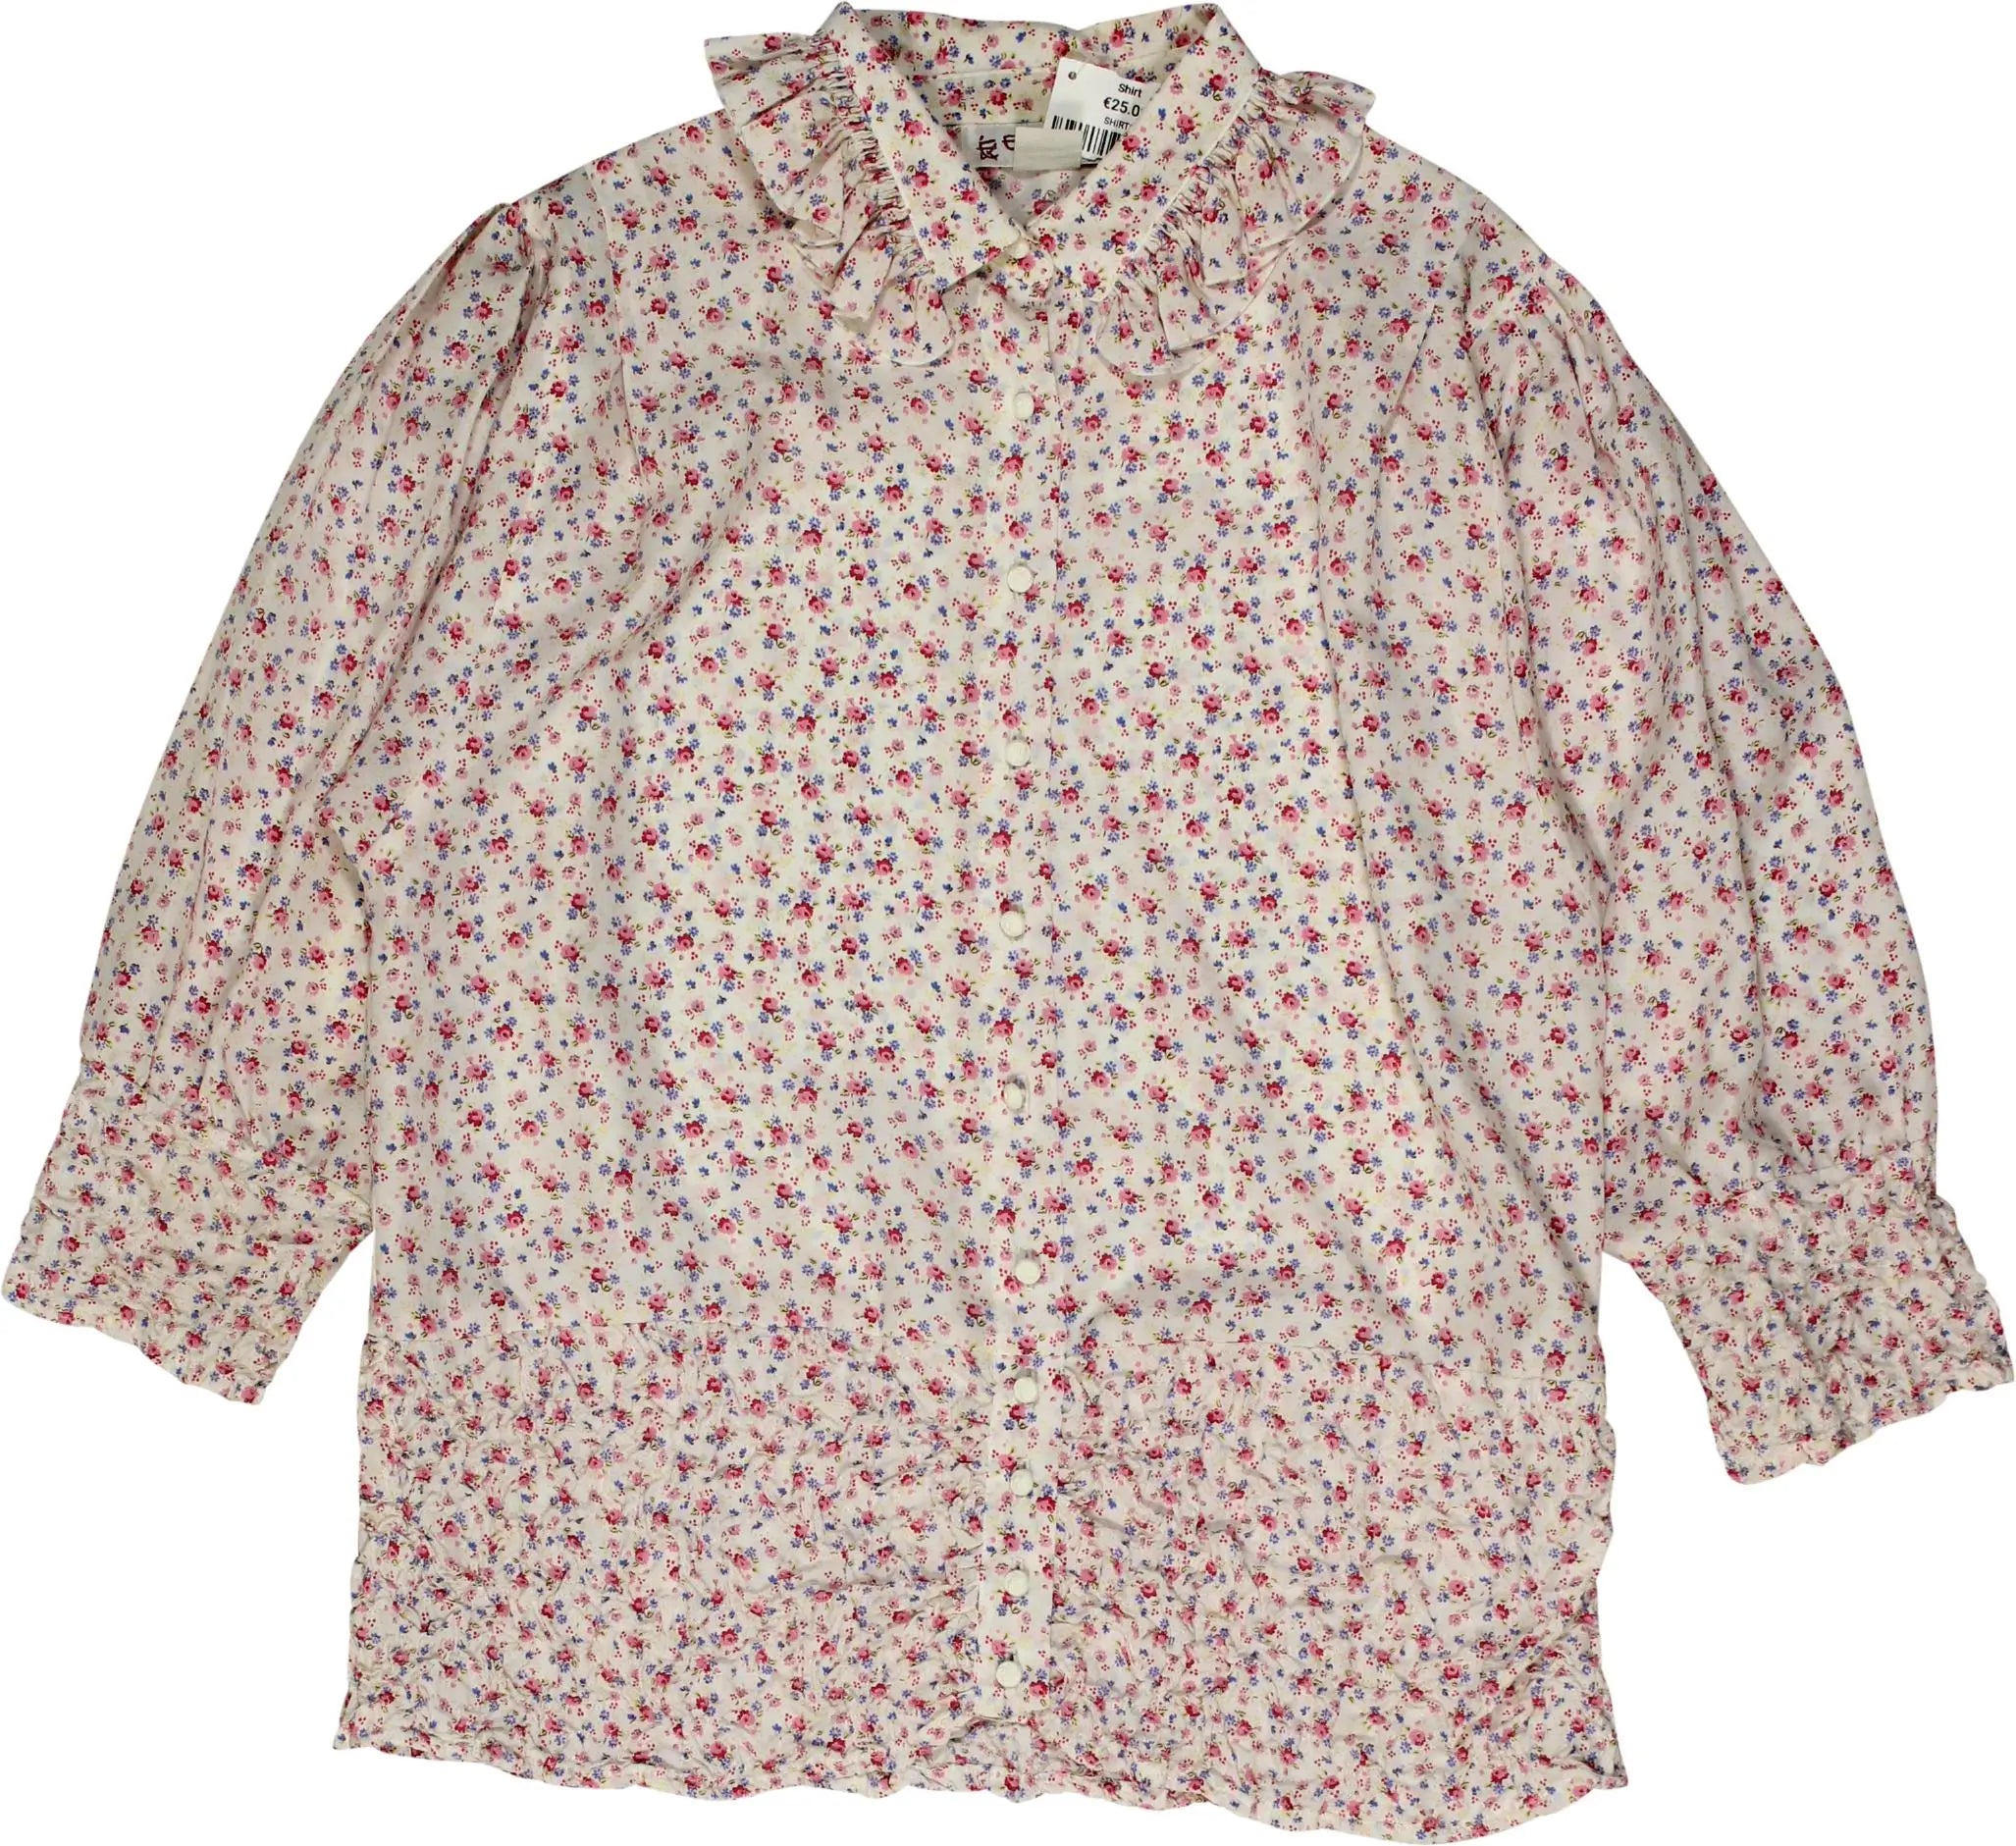 Ester Ken - Floral Shirt- ThriftTale.com - Vintage and second handclothing